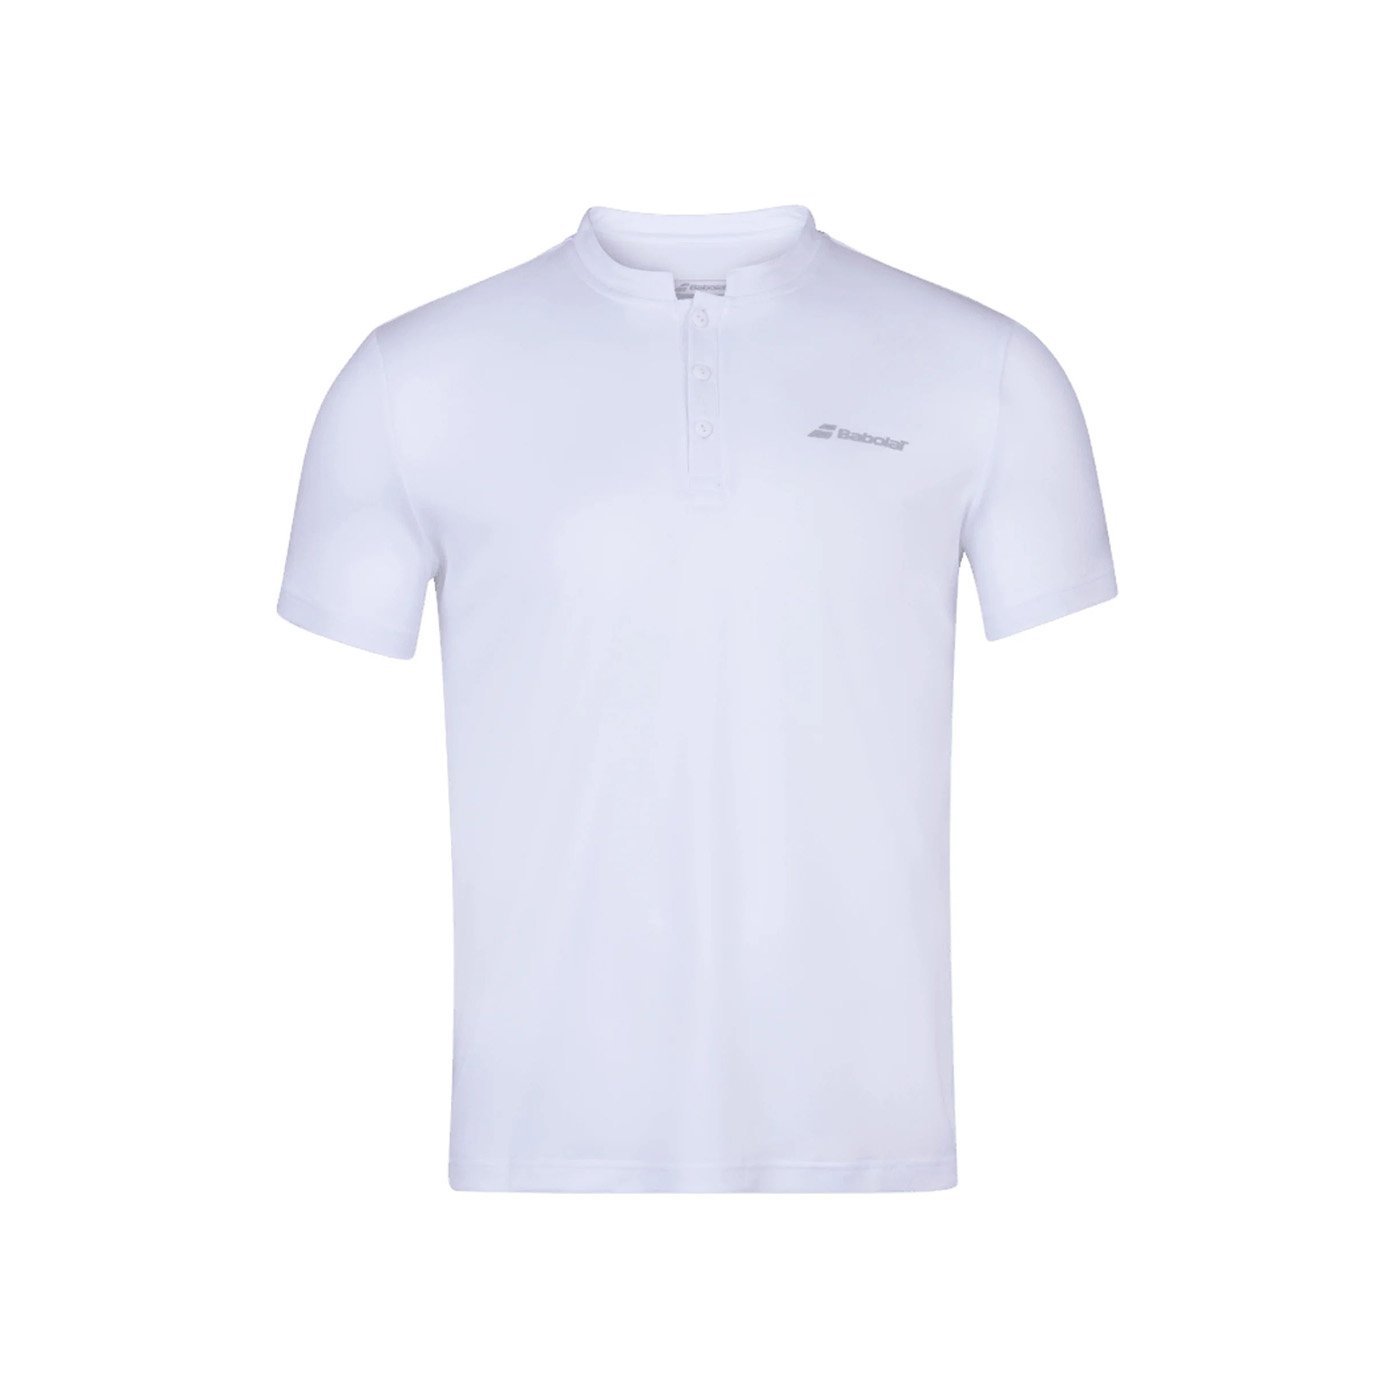 Babolat Play Erkek Çocuk Tenis Polo Tişört - Beyaz - 1